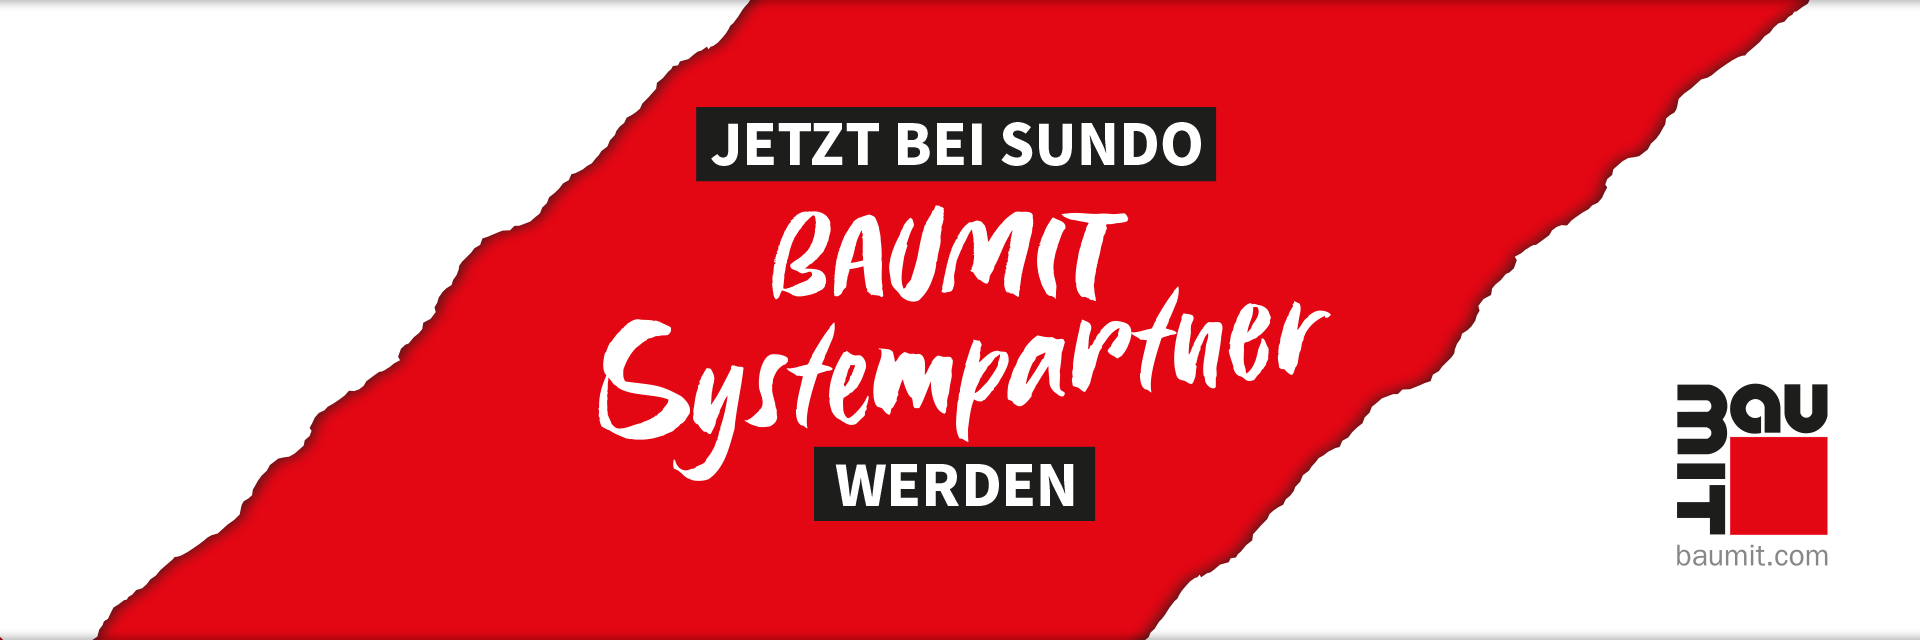 Banner Baumit Systempartner